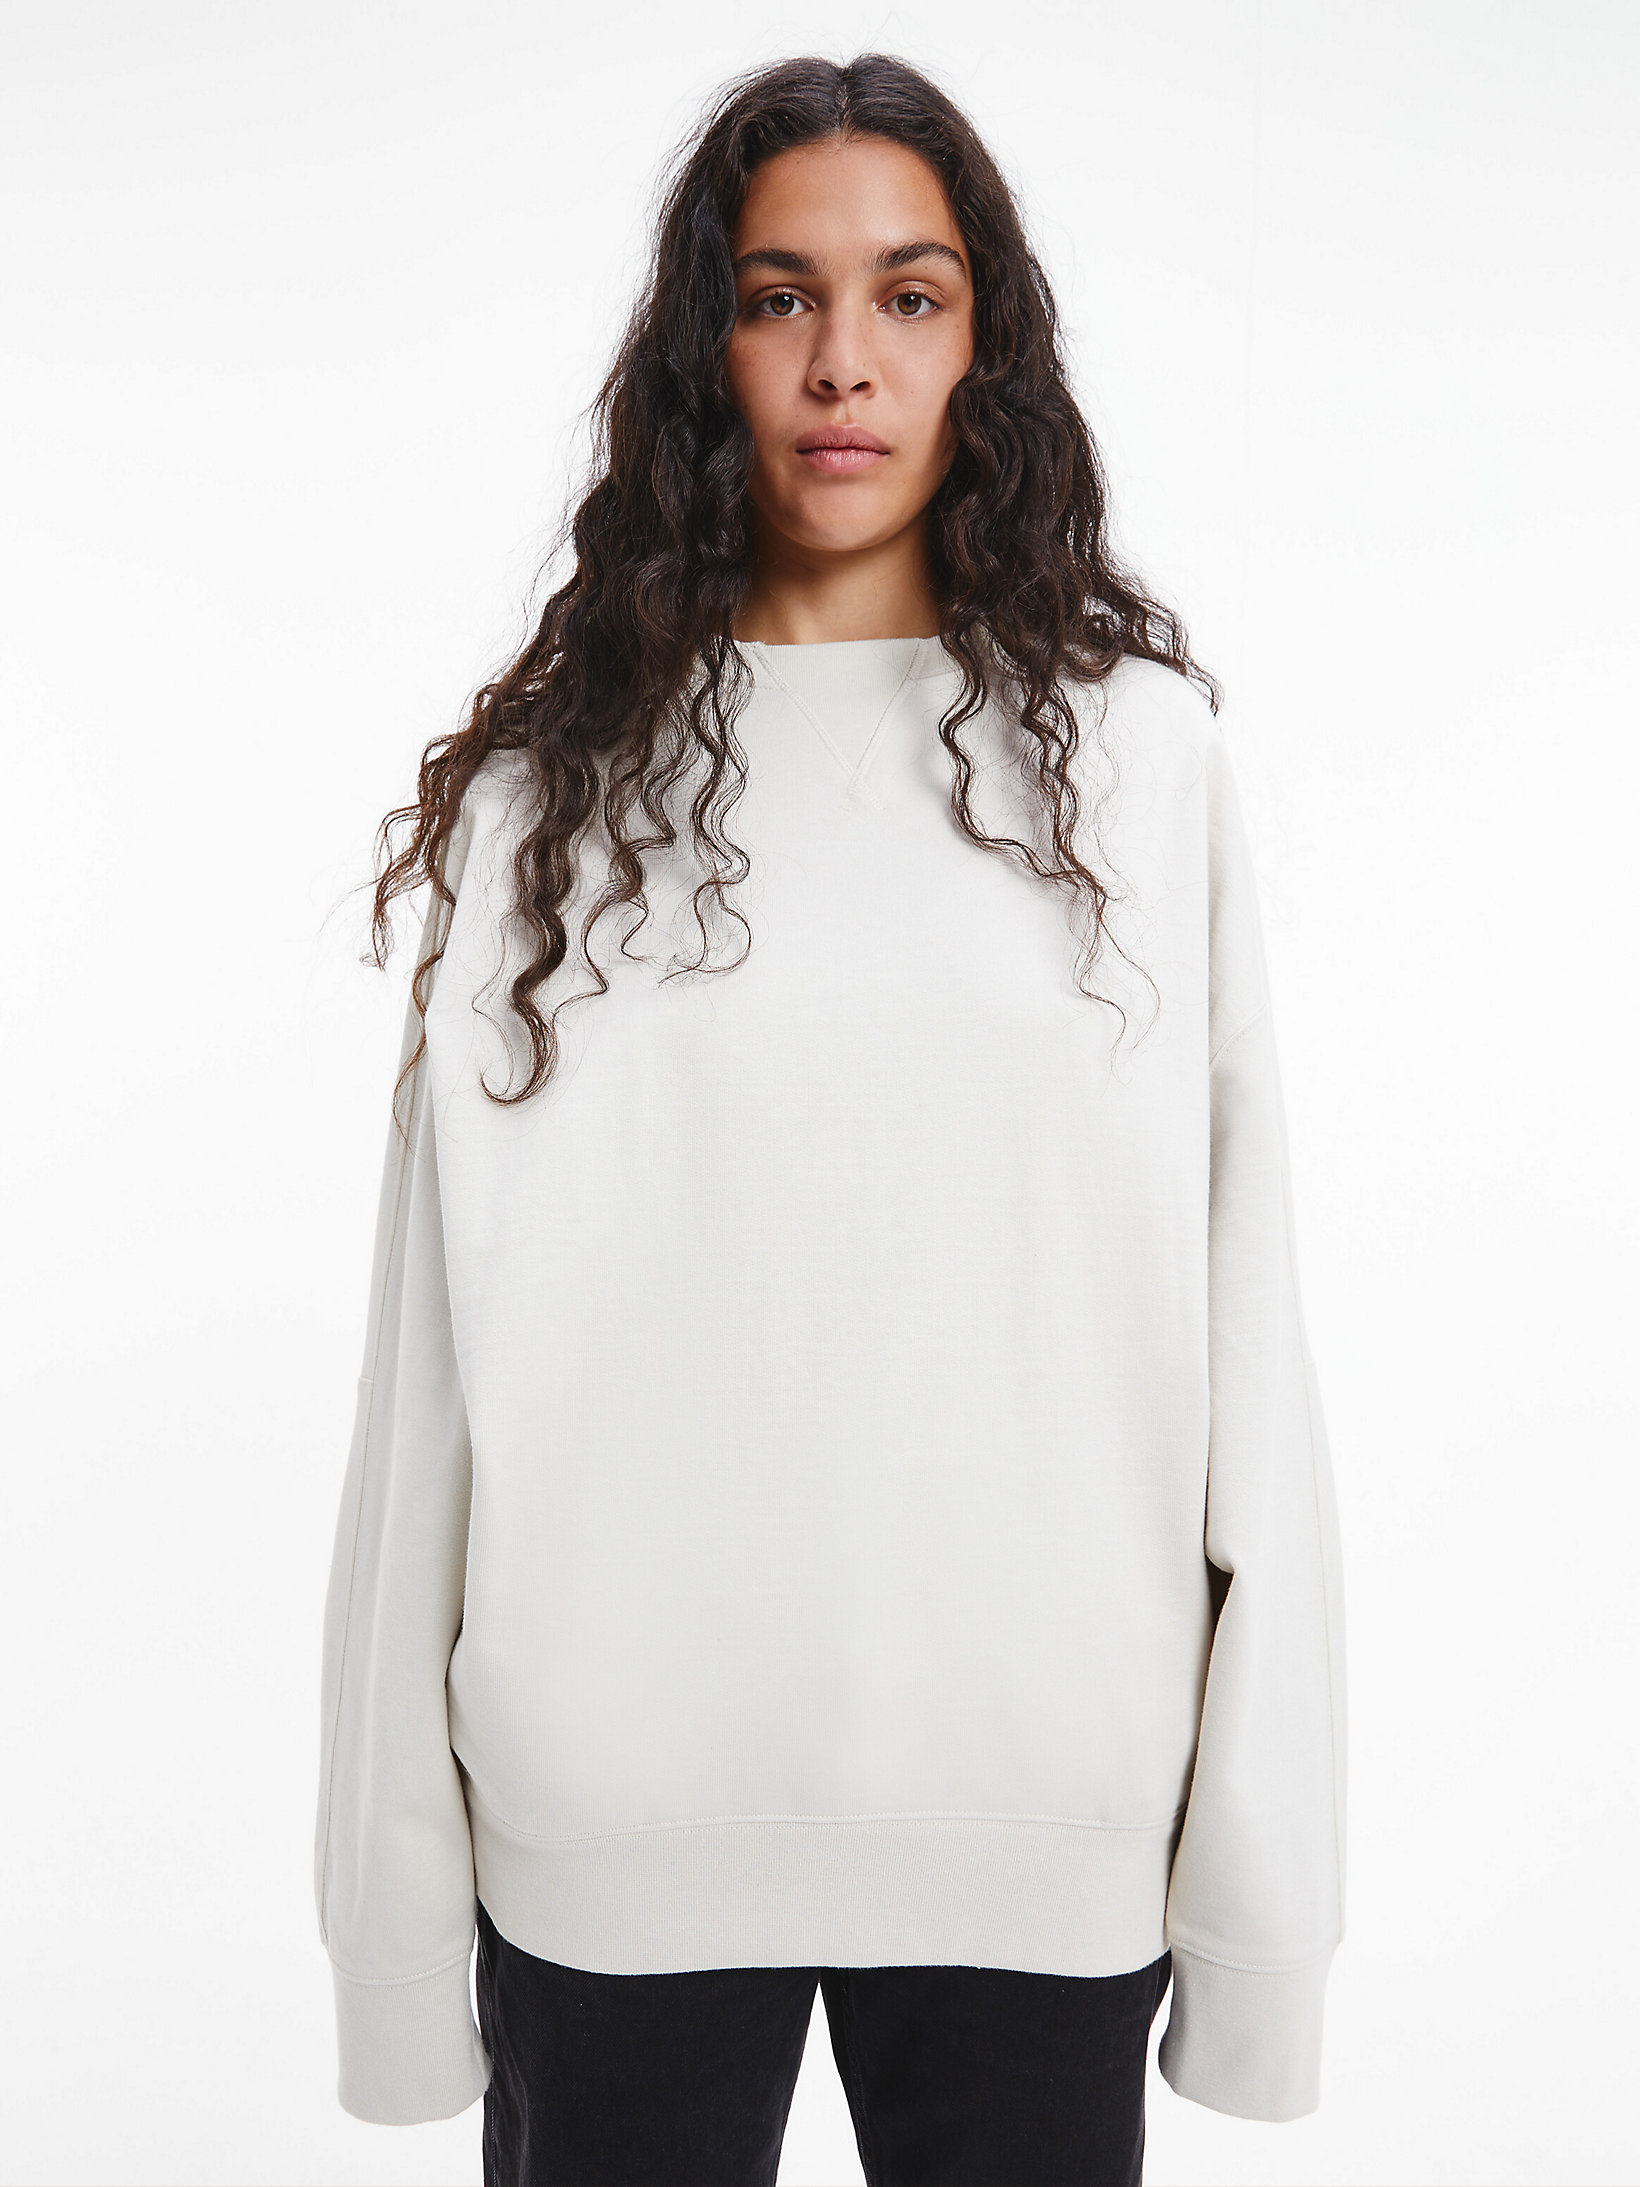 Bone White Unisex Relaxed Sweatshirt - CK Standards undefined unisex Calvin Klein